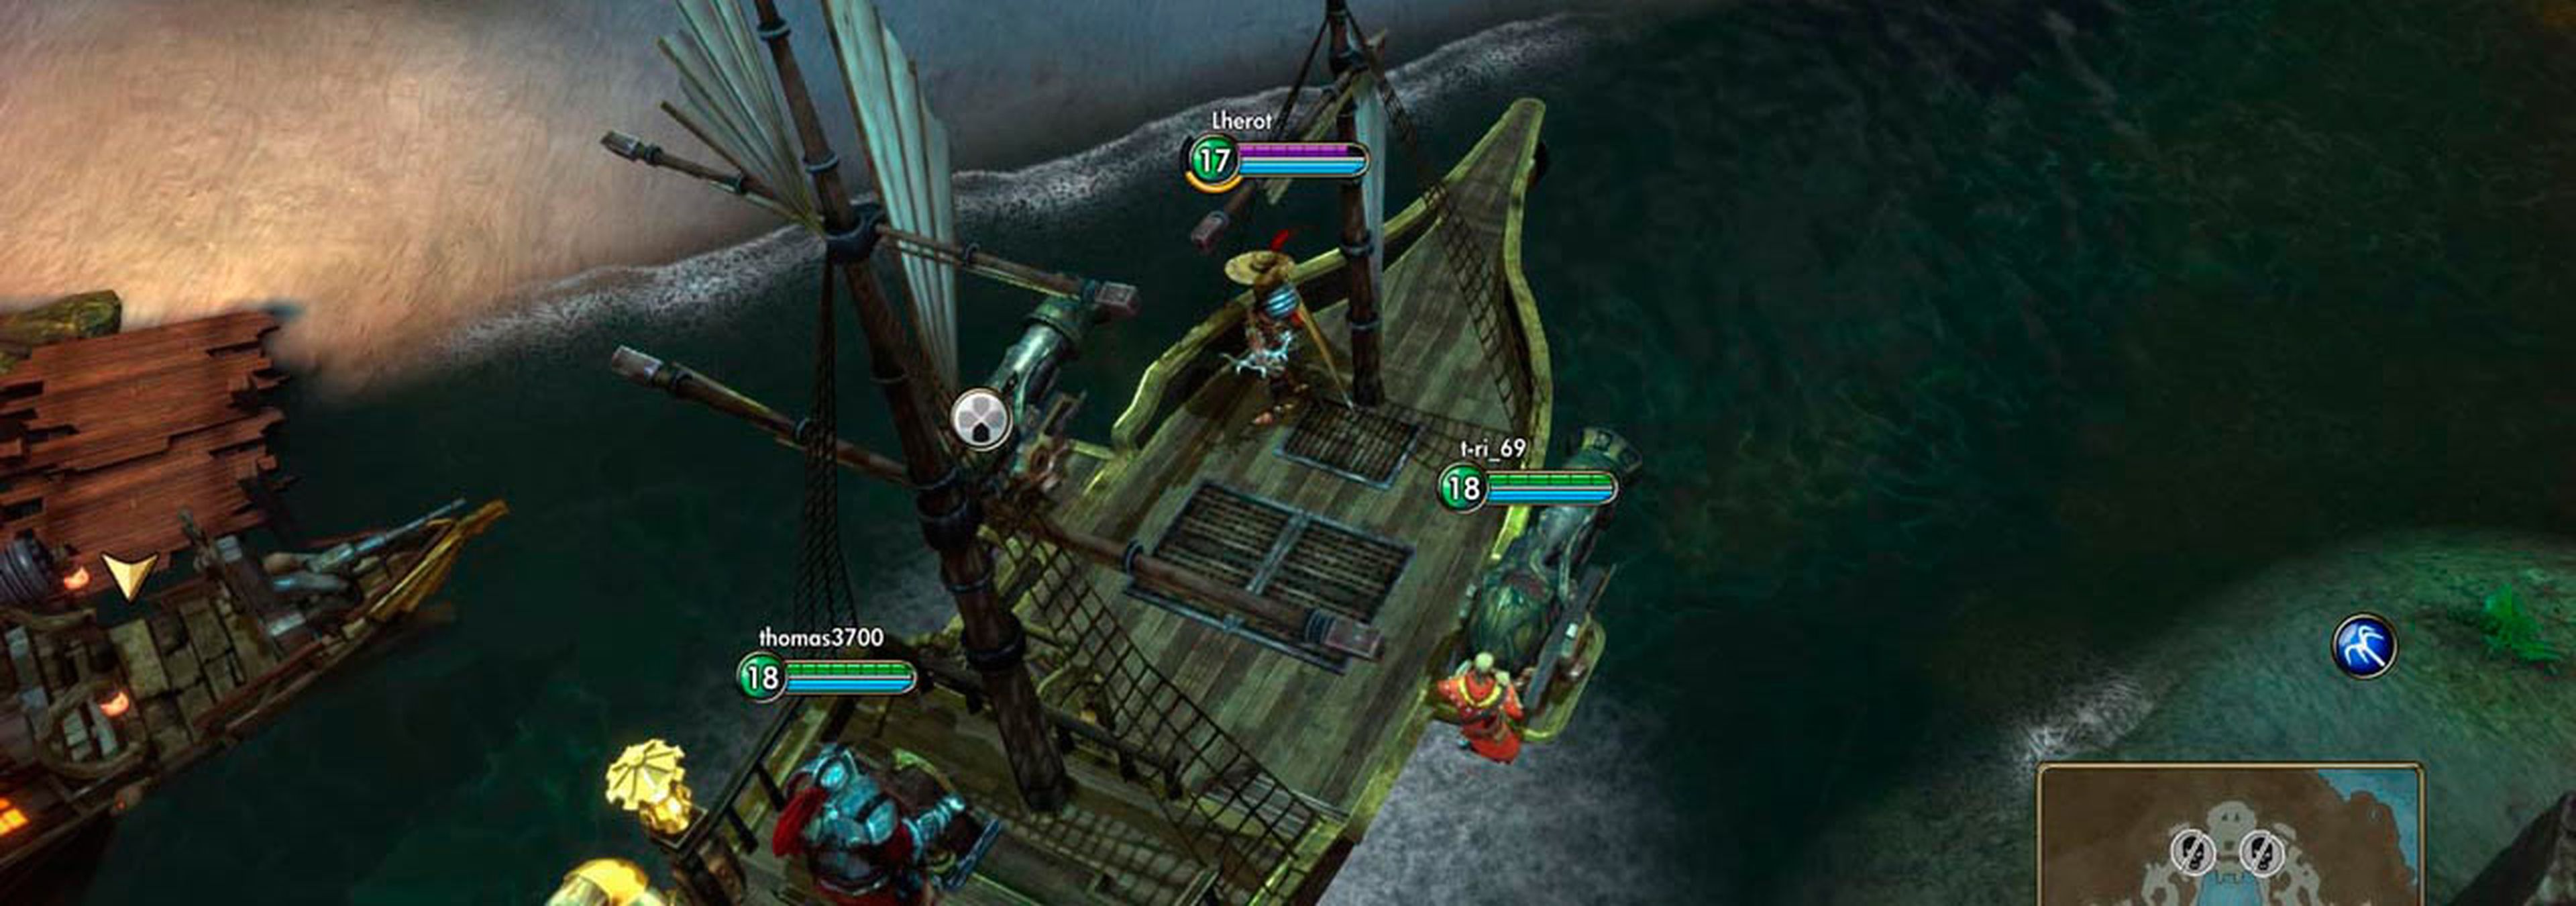 Pirates Treasure Hunters steam